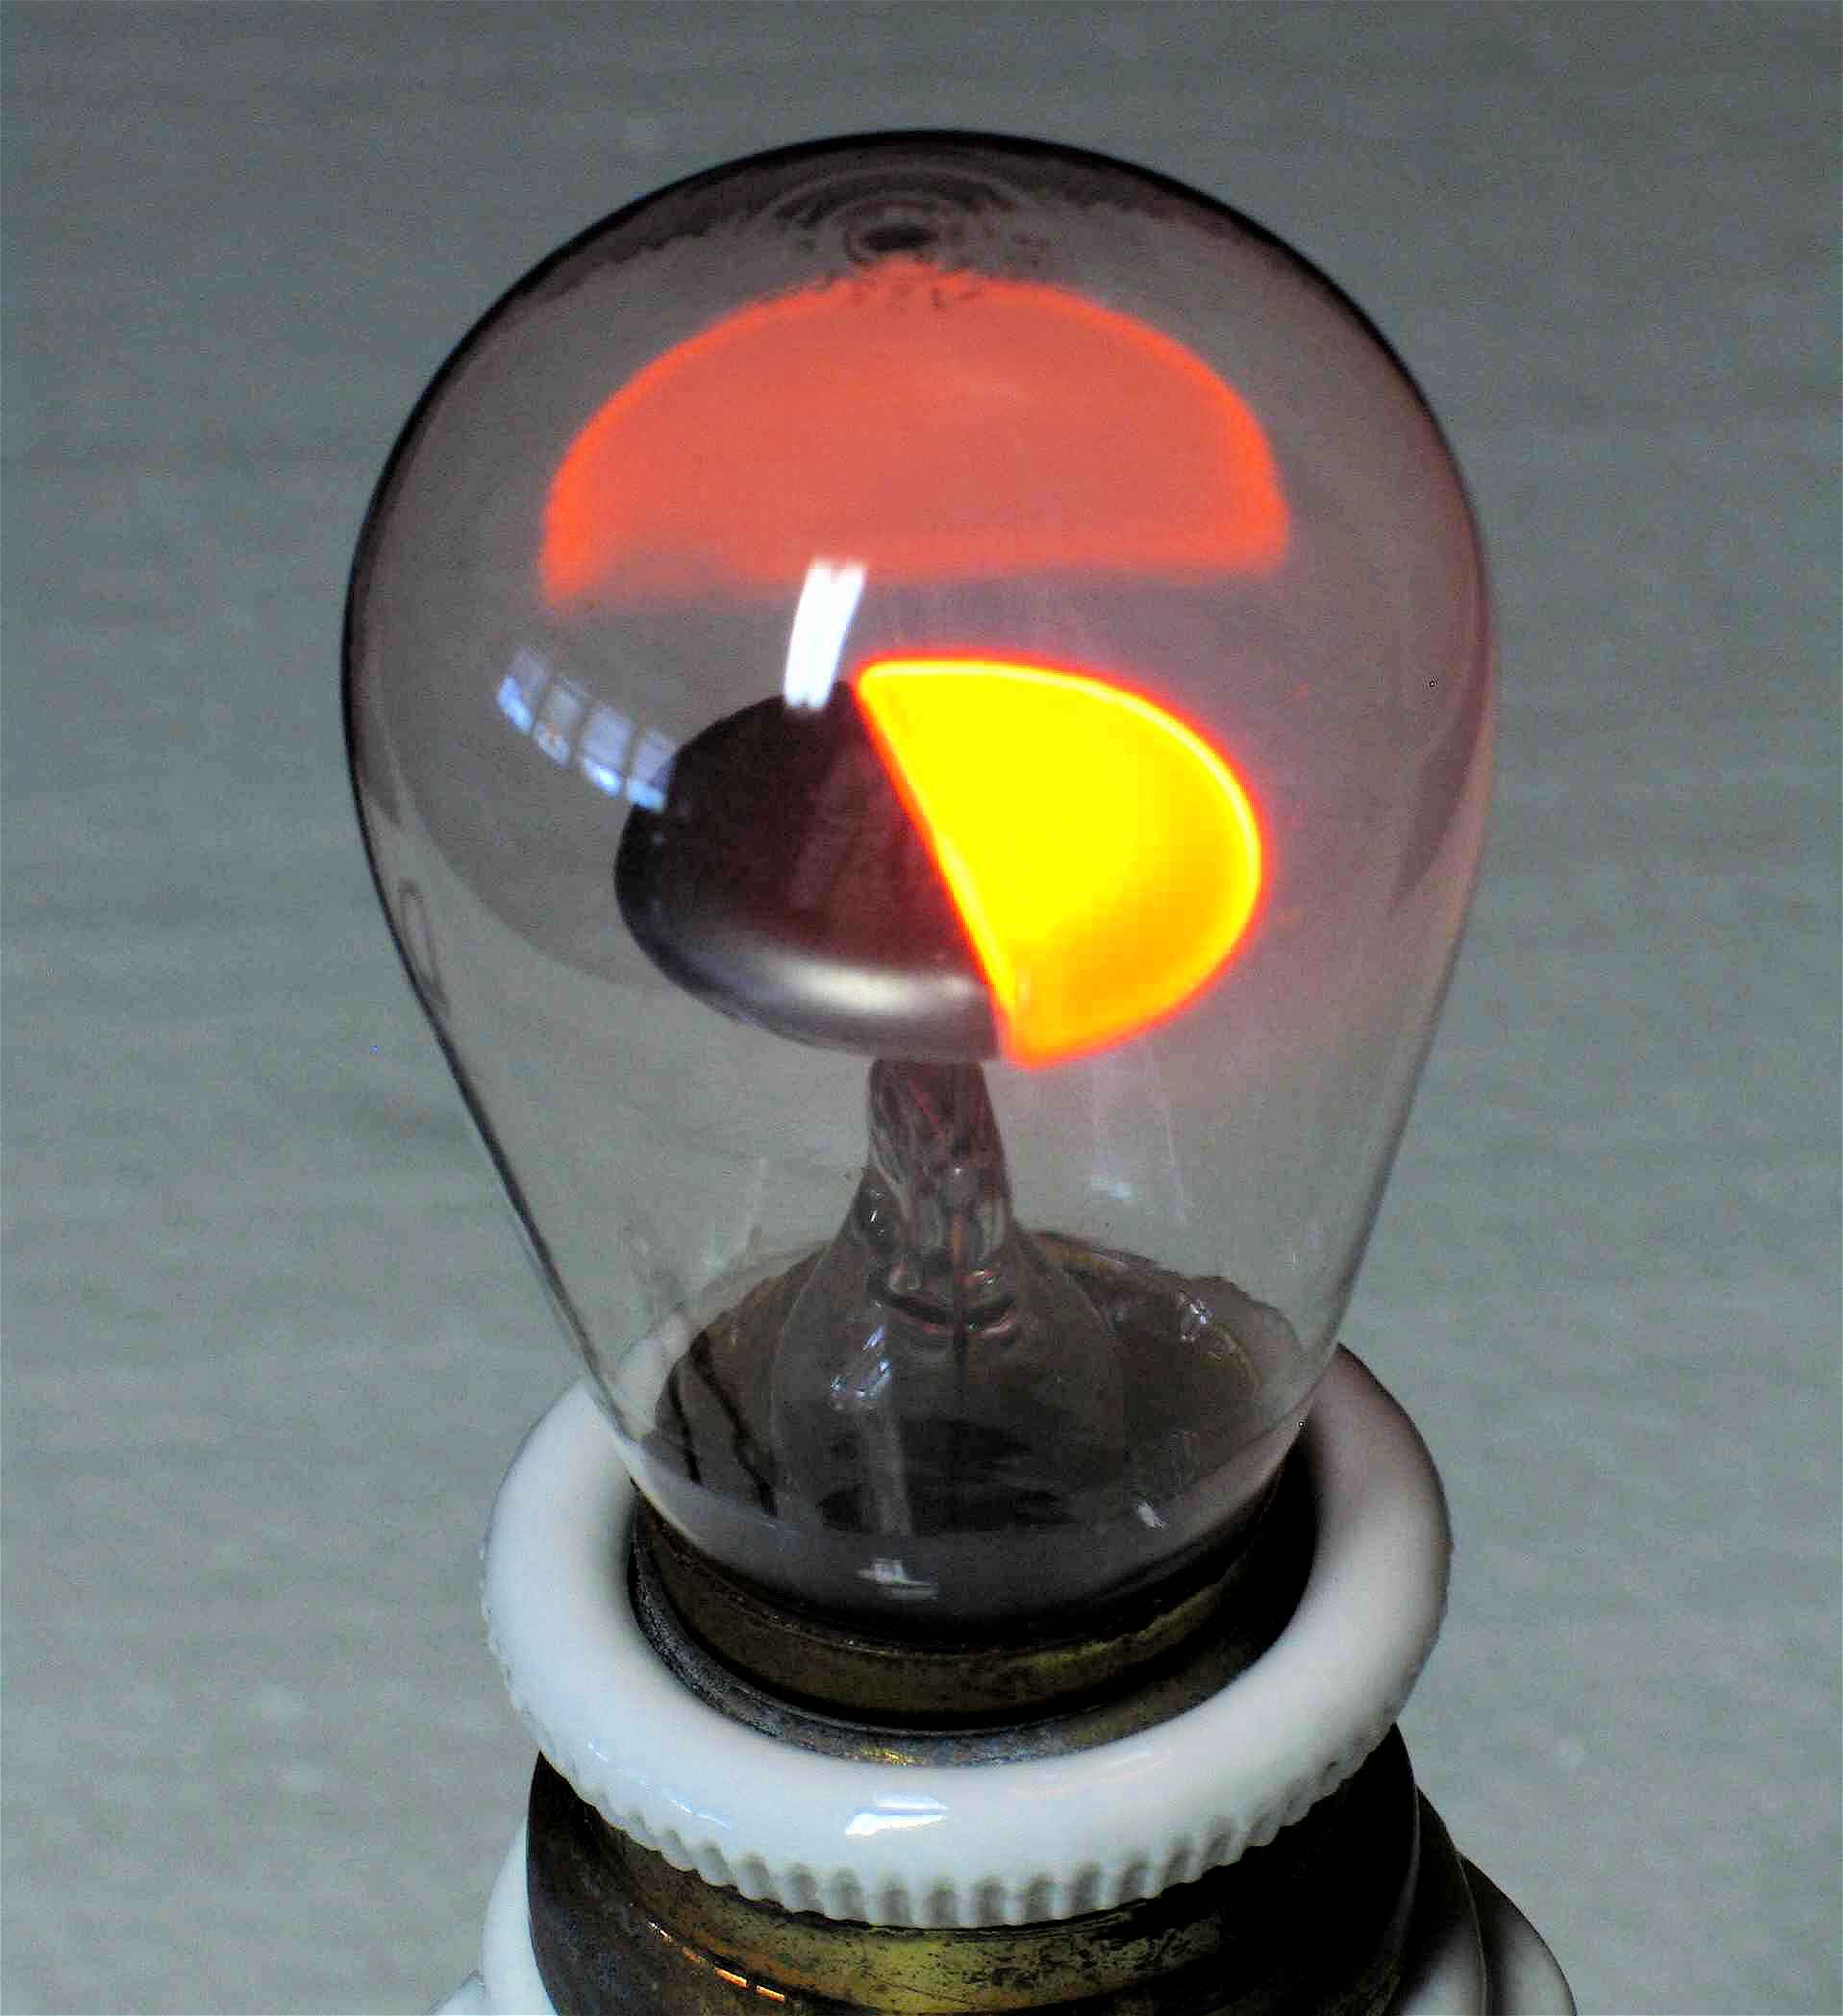 Lampes à décharge dans le néon
(2 demi-cercles)